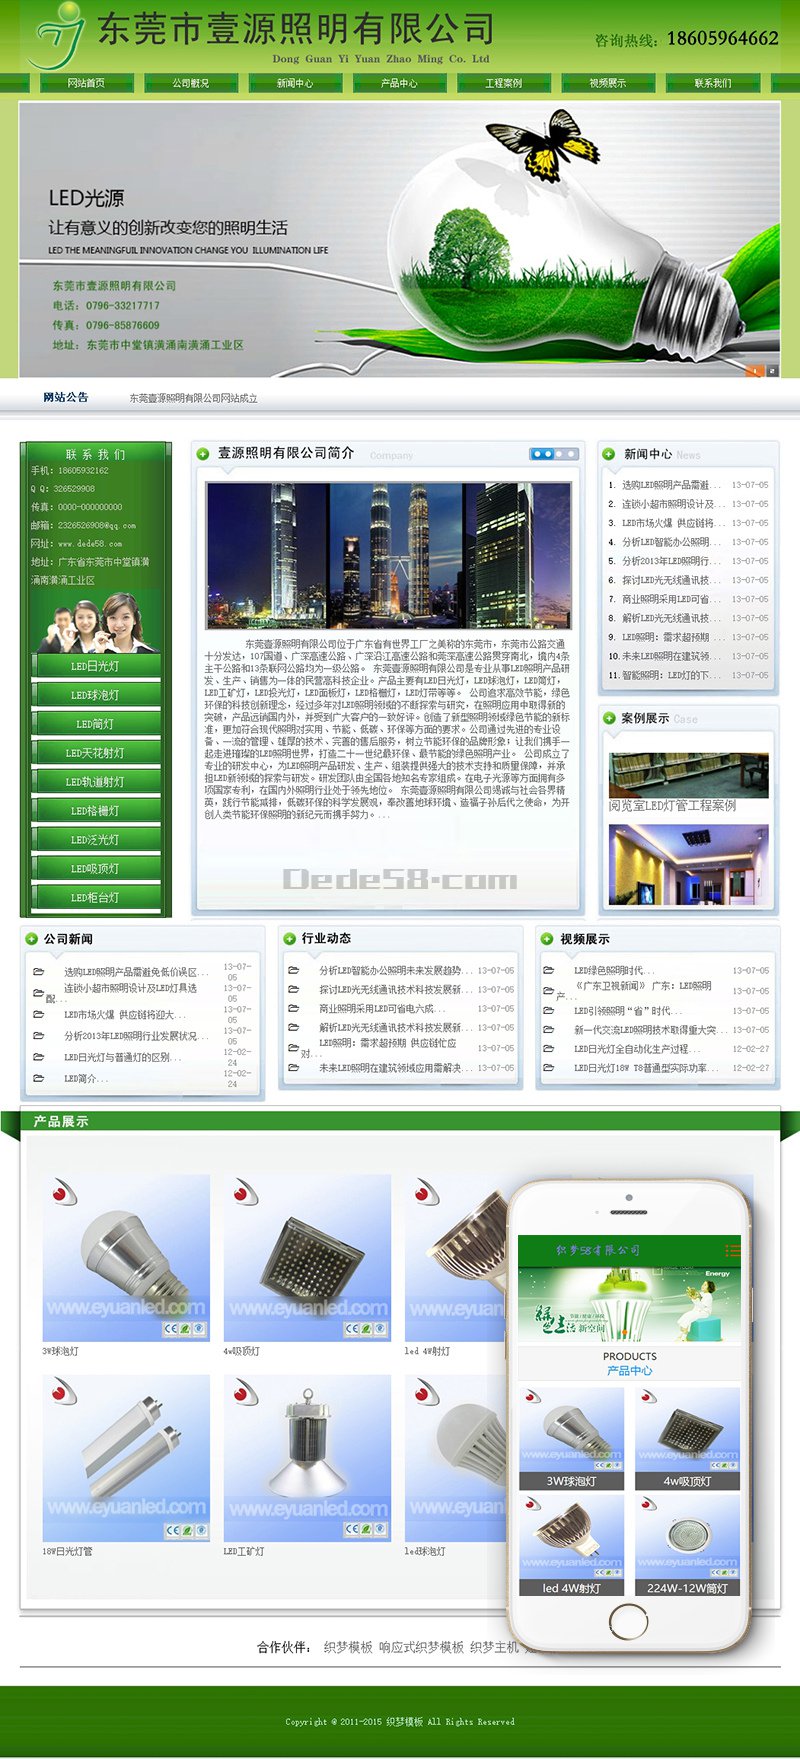 绿色节能环保类LED电子产品网站织梦模板(带手机端) 第1张